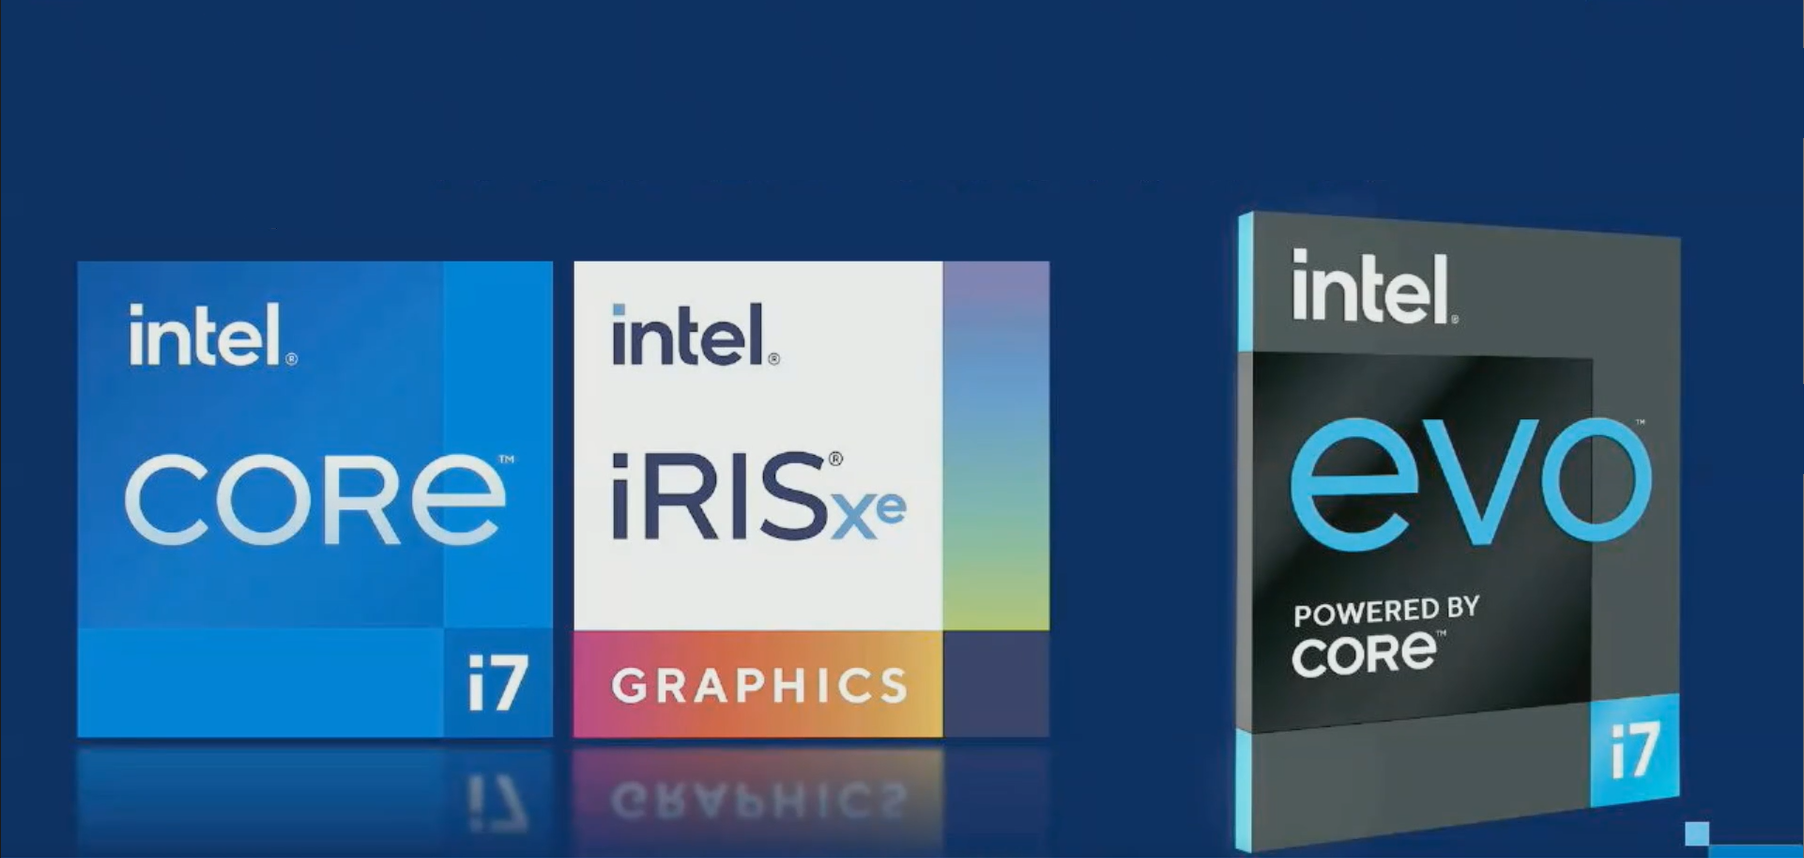 Ryzenよりも高性能と第11世代Coreをアピール。「インテル PC FES 2020 ...